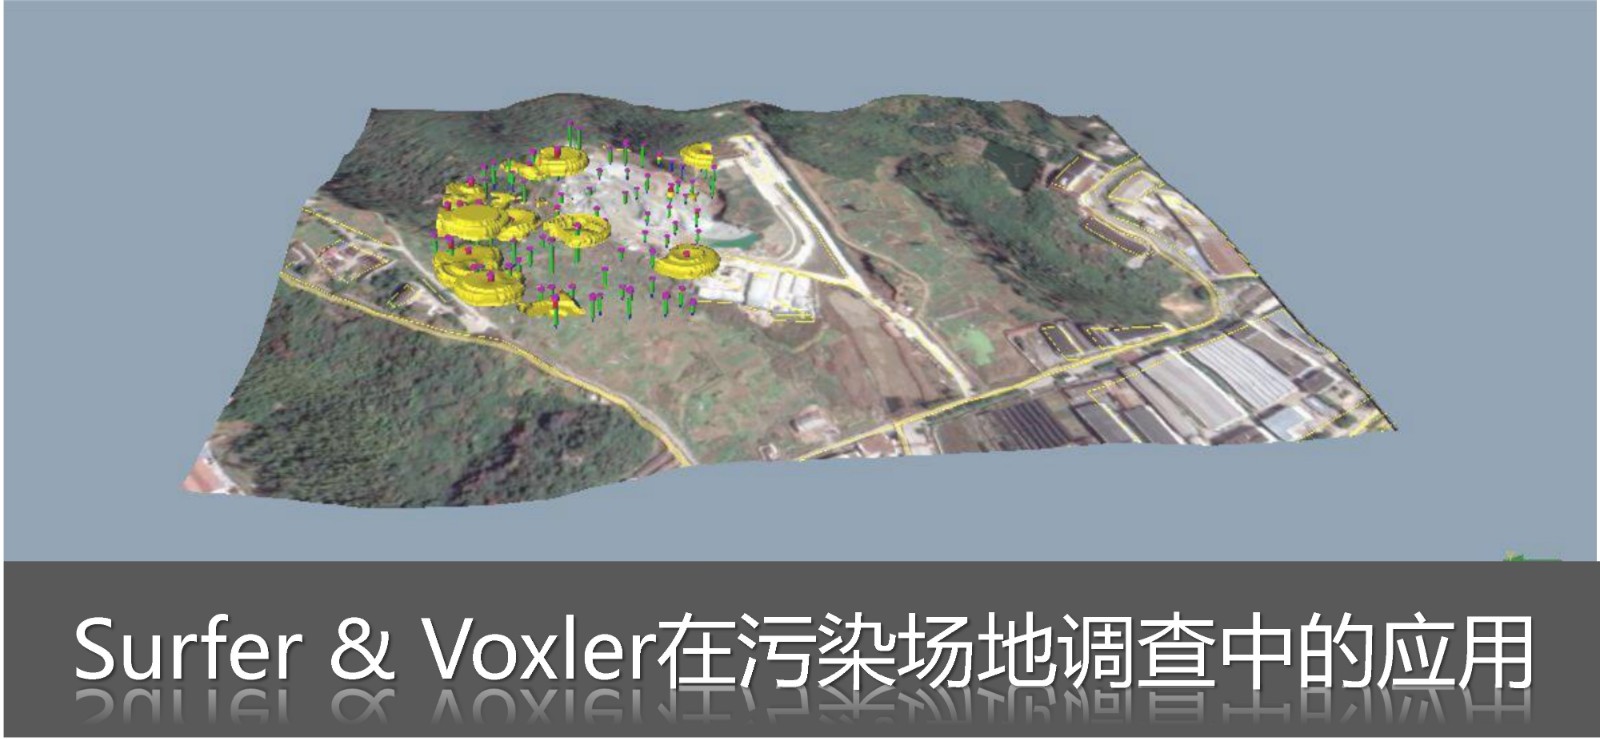 Surfer&Voxler软件在污染场地调查中的应用